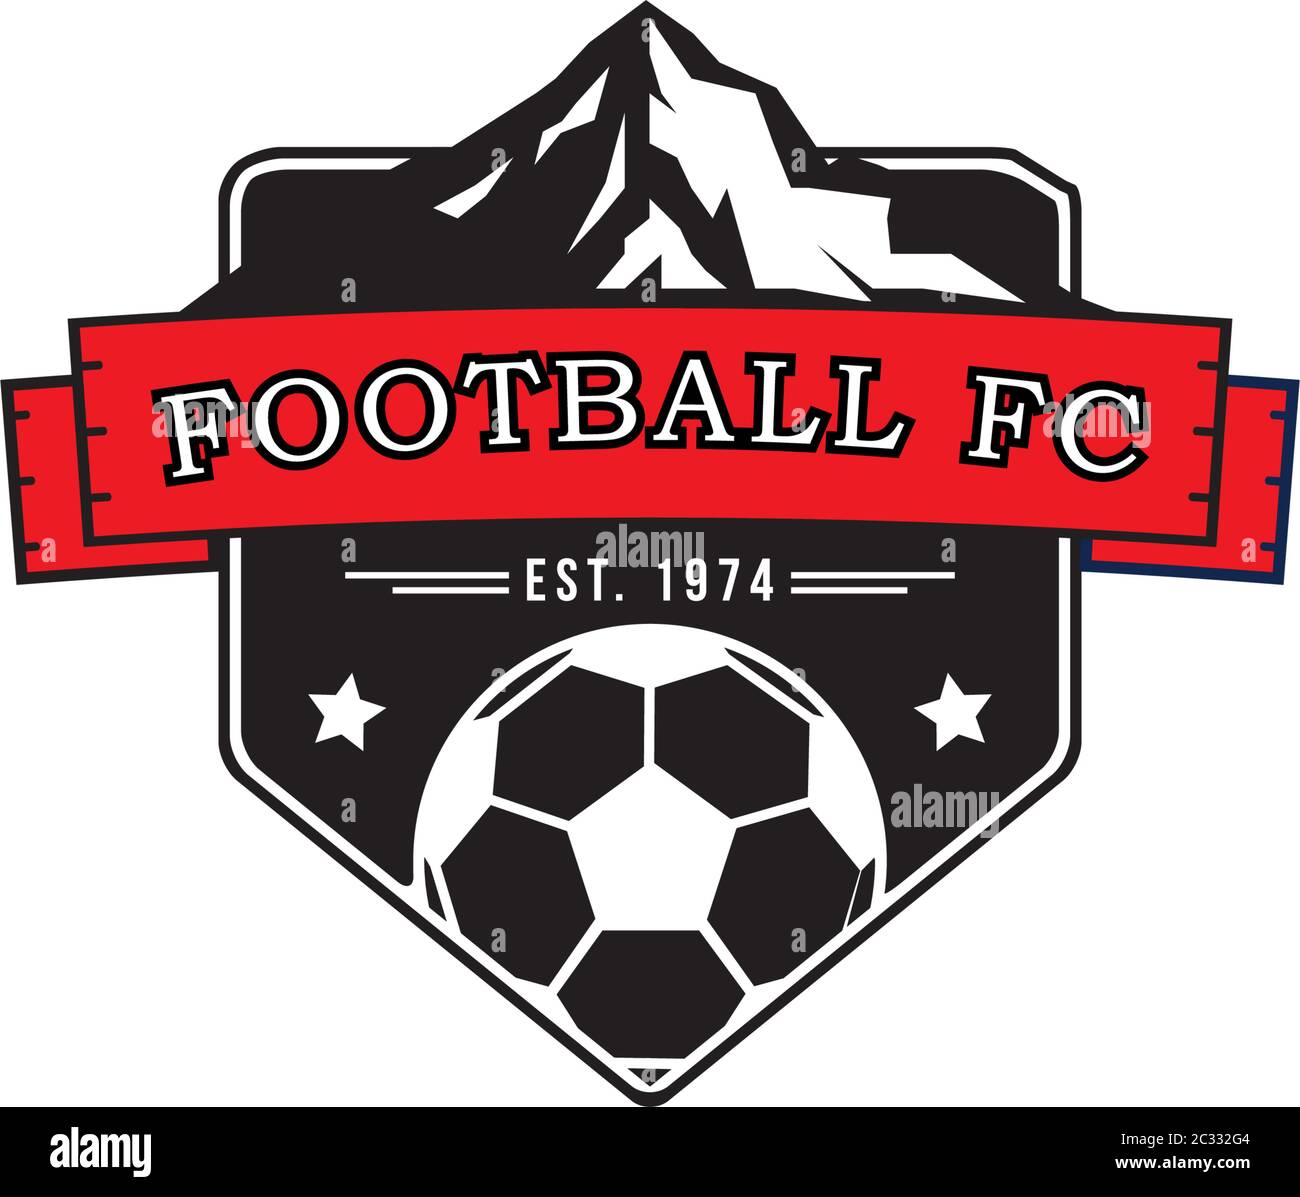 Football Club Logo Design Template, mountain sport logo inspiration Stock Vector